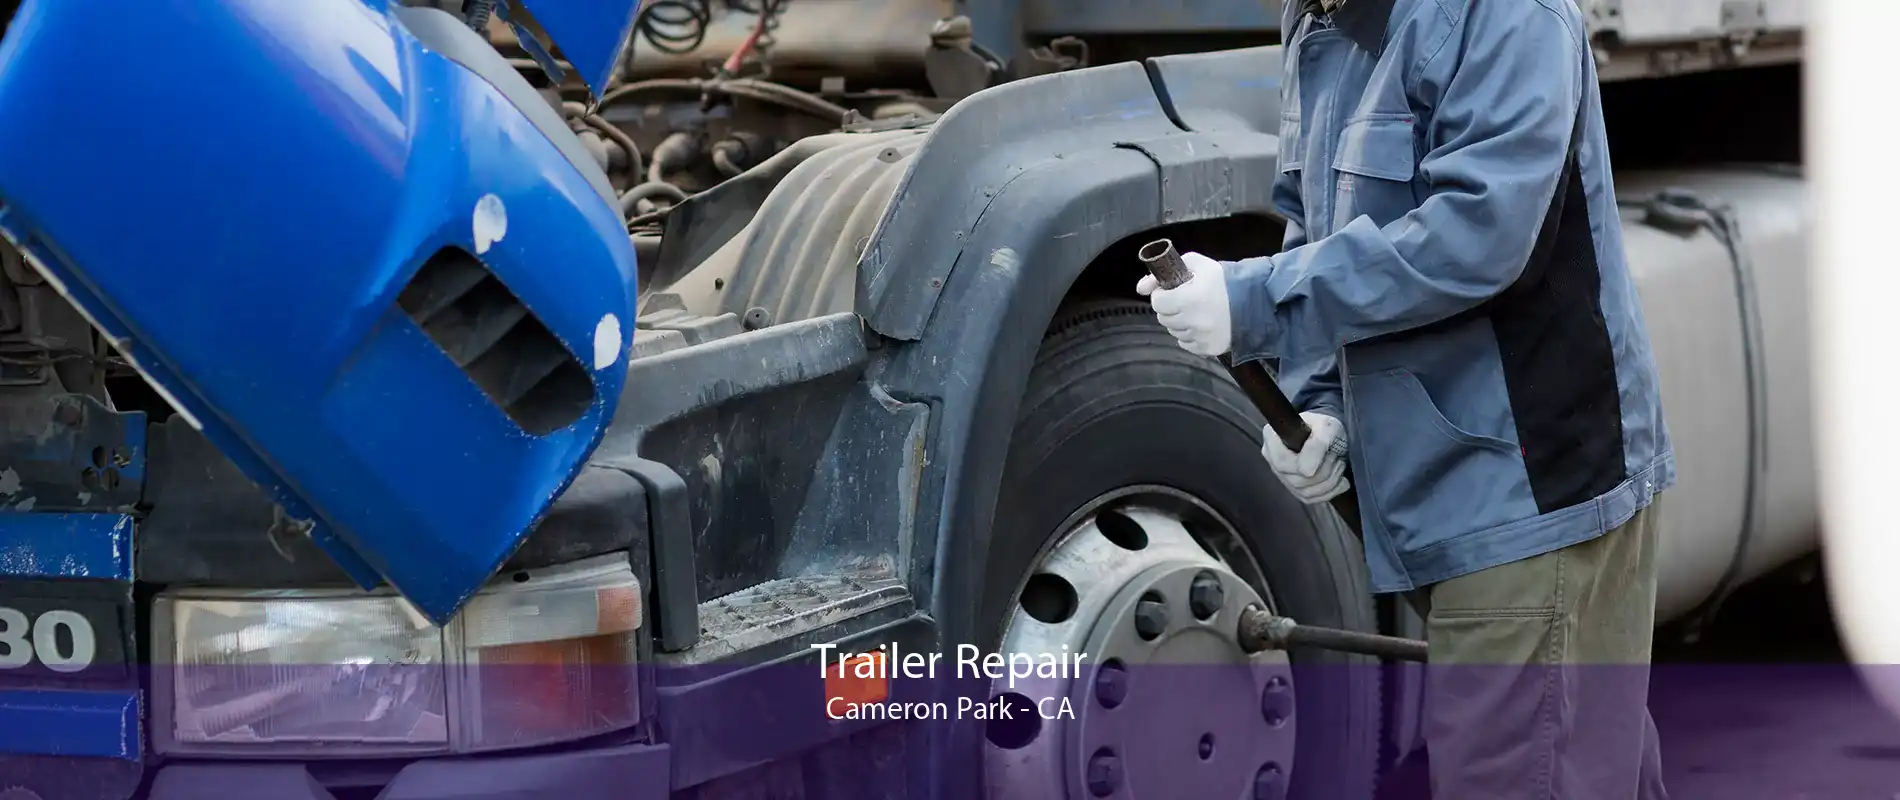 Trailer Repair Cameron Park - CA